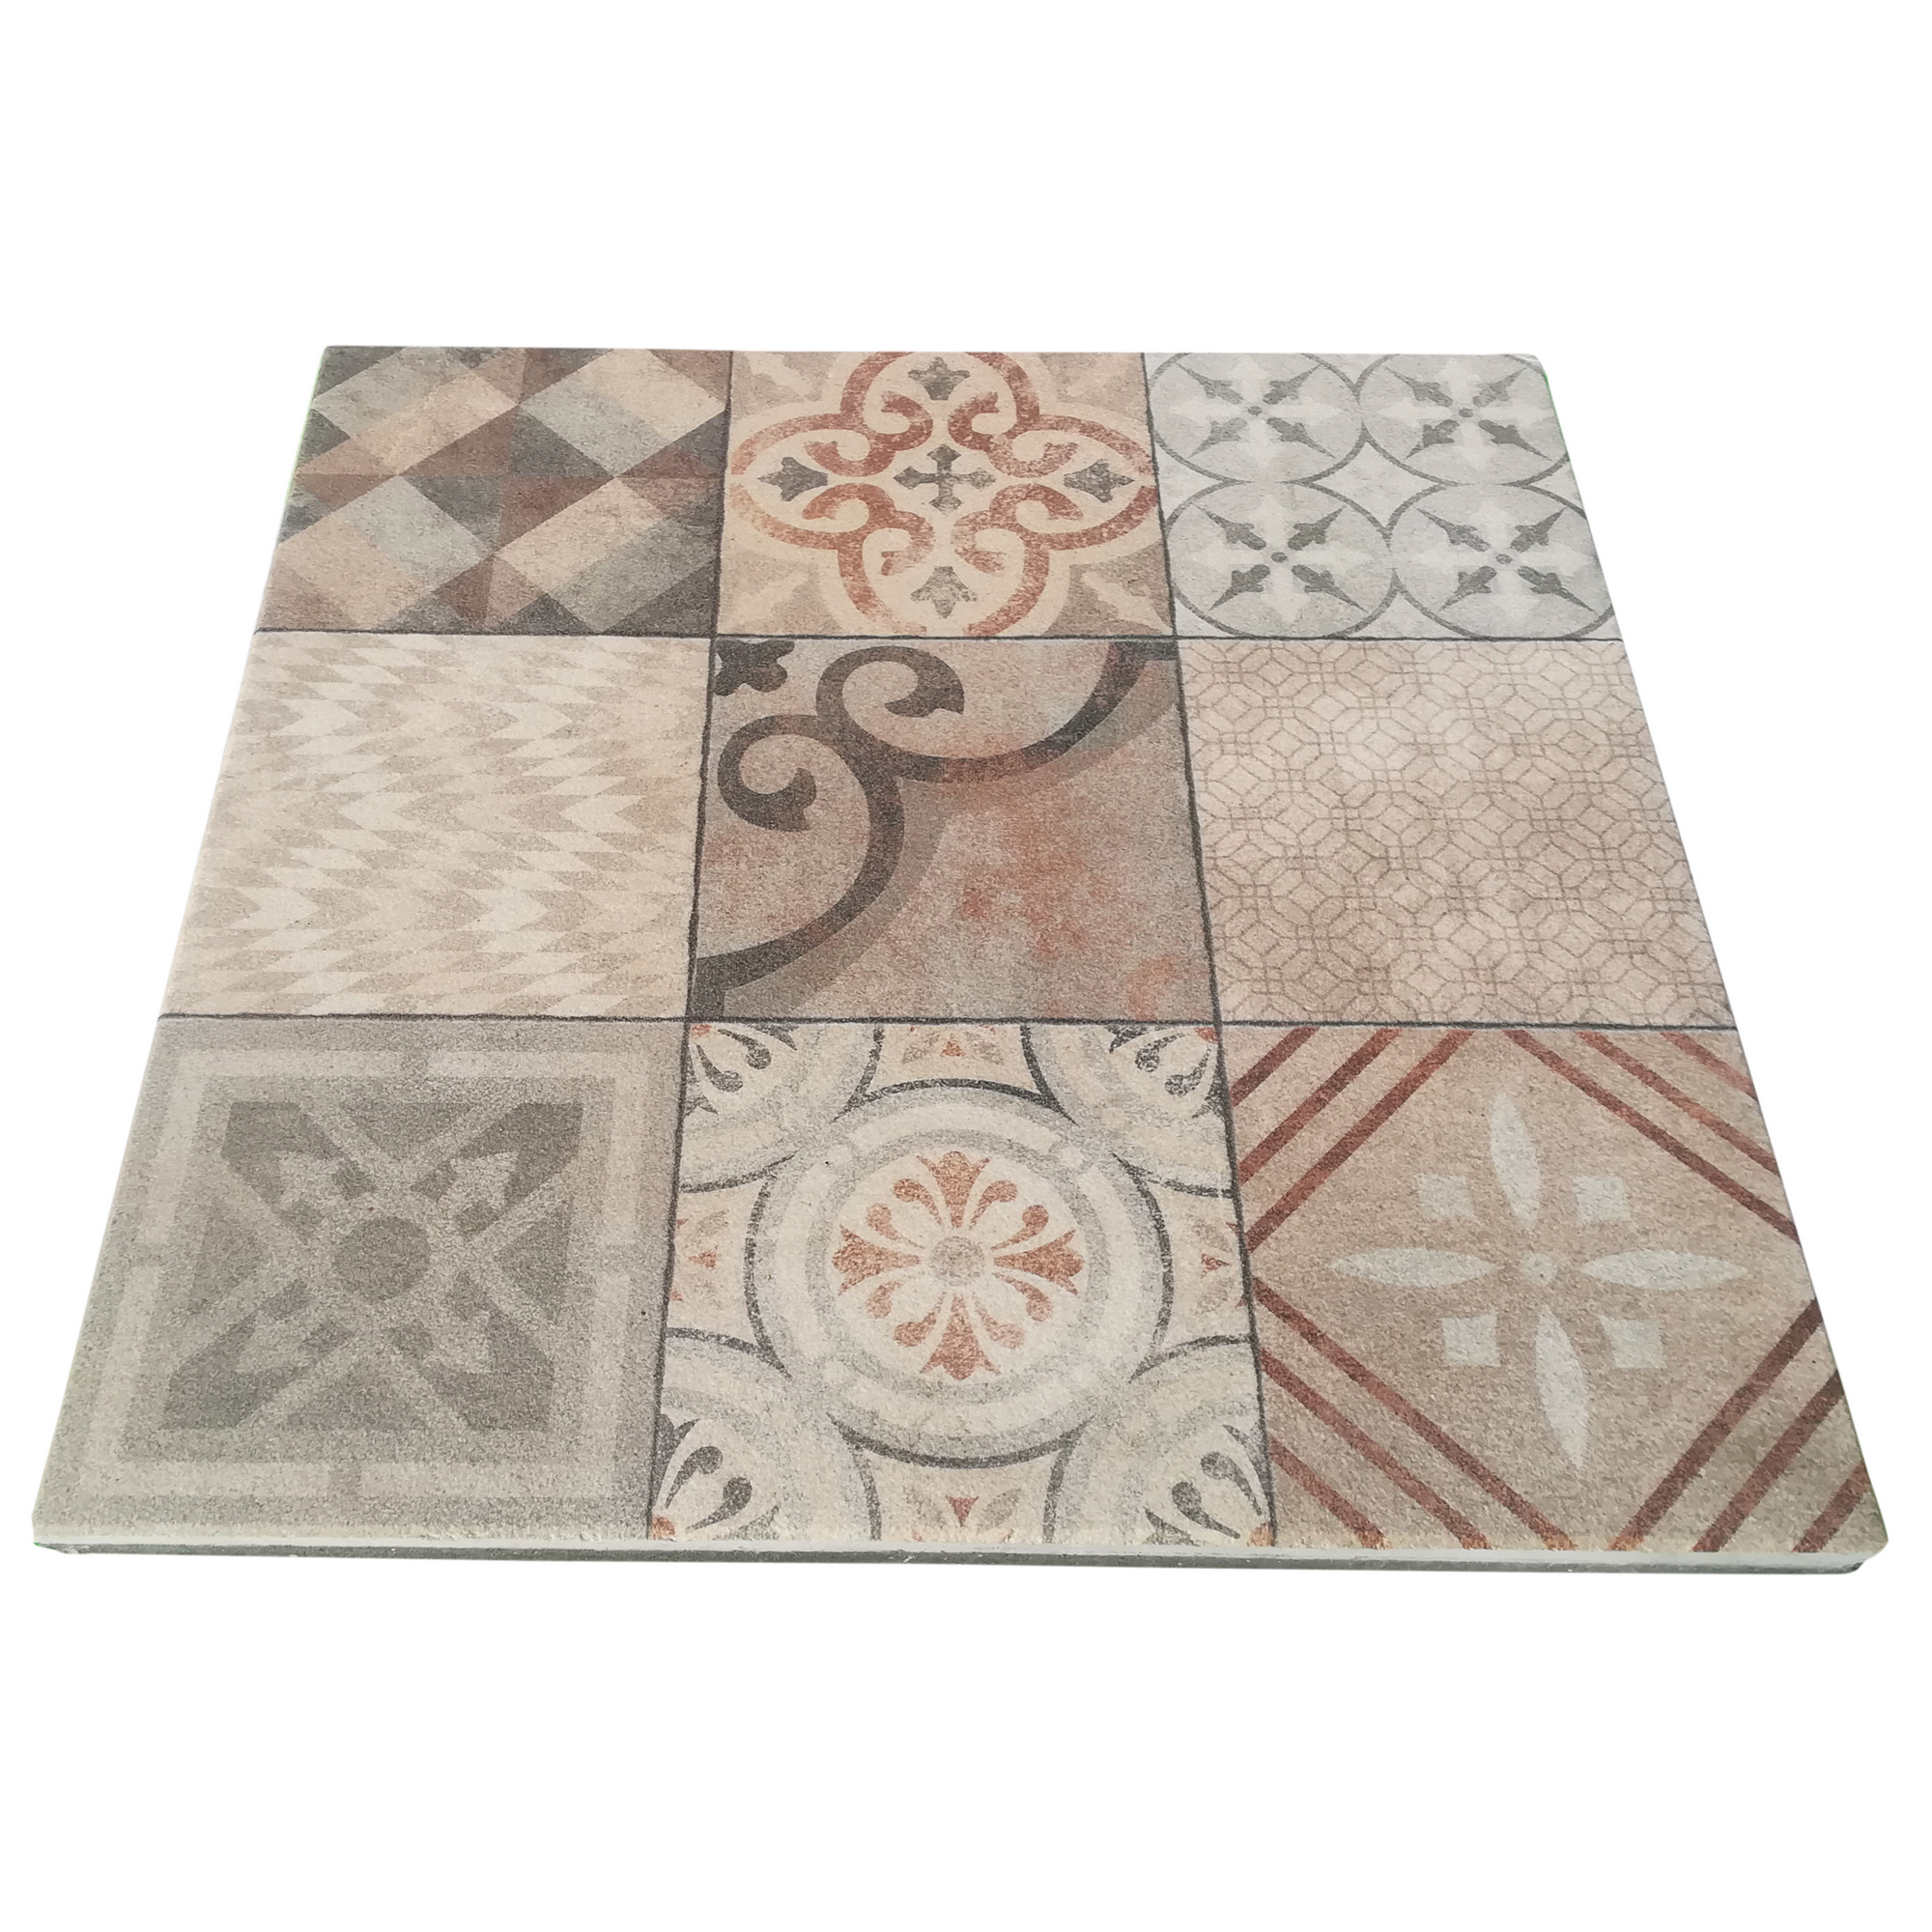 Platte 'Mosaik Salihari arabika' naturfarben 60 x 60 x 3,2 cm + product picture